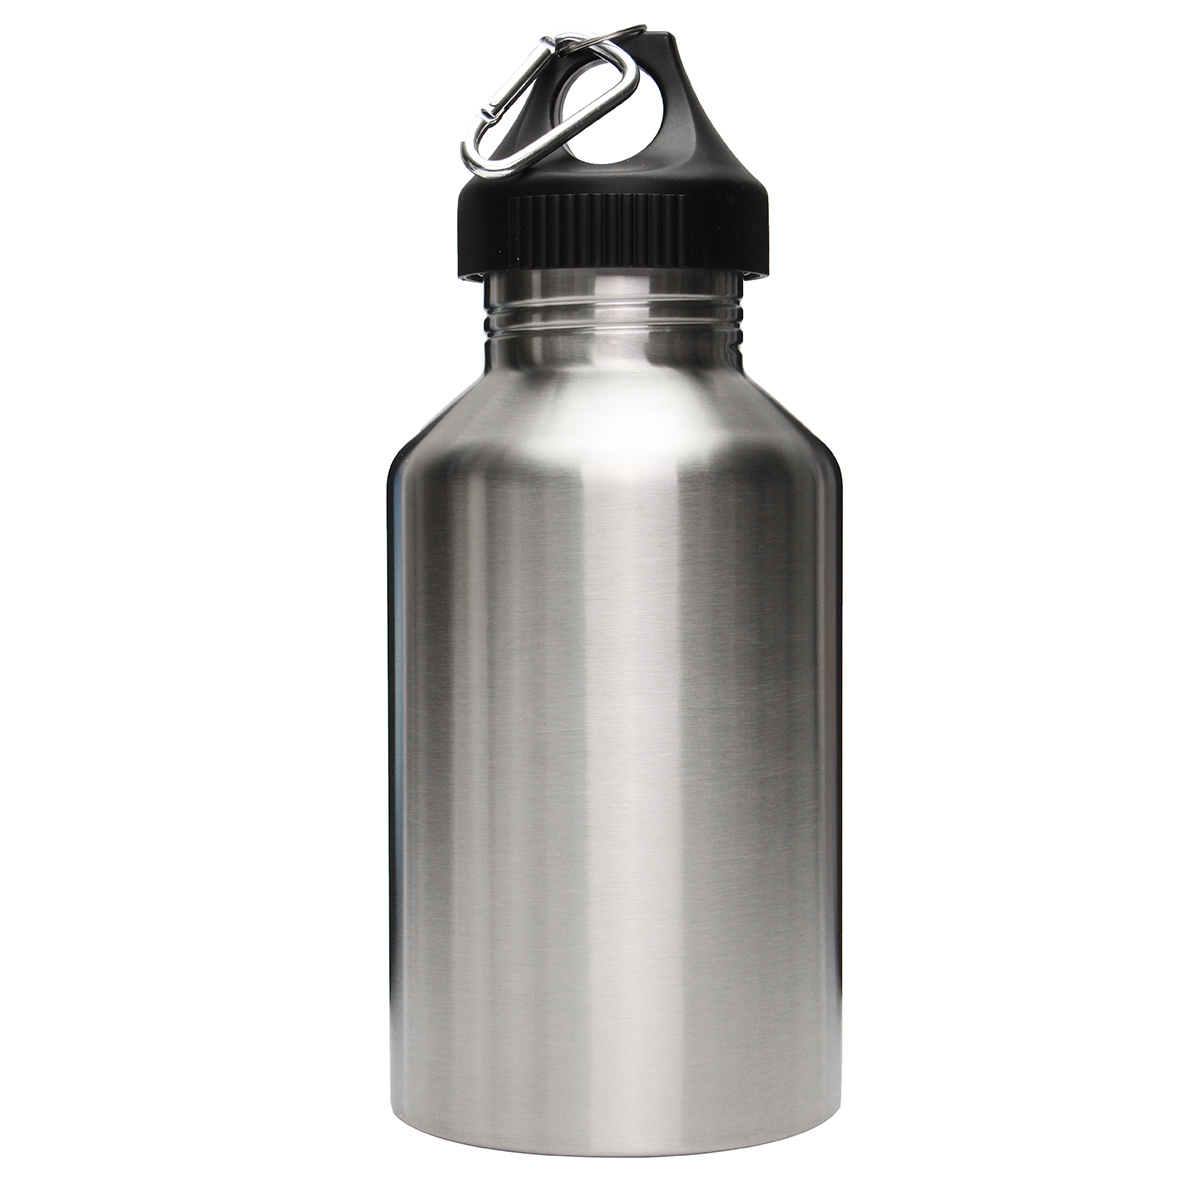 Running Water Bottle Kettle Holder Storage Bag Sports Gym Flask Pack Pocket